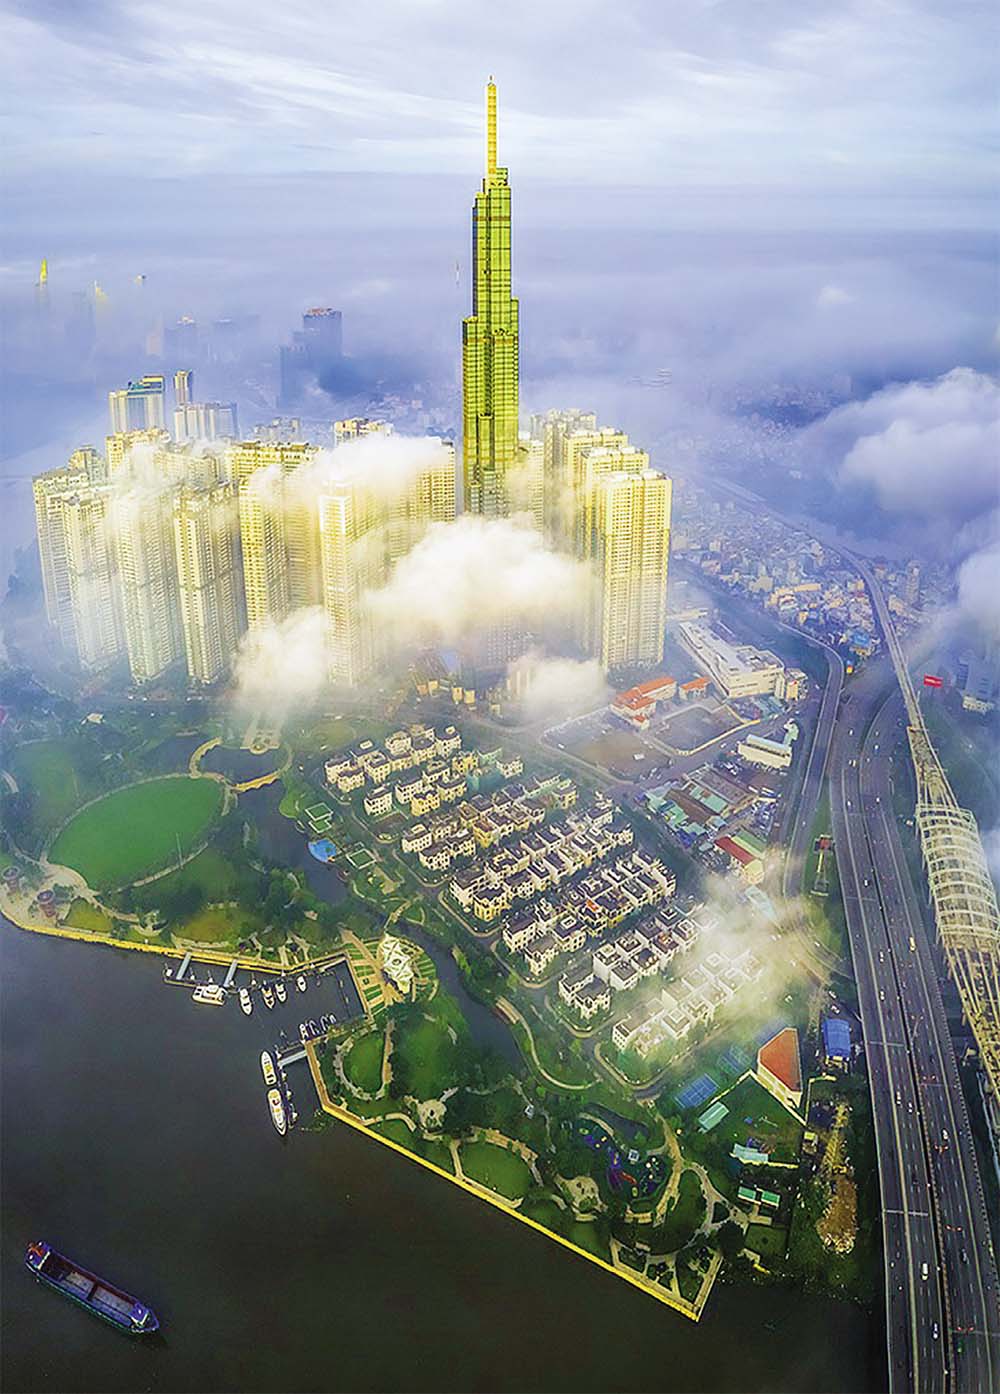 Tòa nhà biểu tượng Landmark 81 là tòa nhà cao nhất Việt Nam do Tập đoàn Vingroup xây dựng từ năm 2015, hoàn thành và chính thức đi vào hoạt động từ năm 2018 với số tiền đầu tư lên tới 300 triệu USD. Landmark 81 khánh thành và hoạt động hạng mục đầu tiên (TTTM Vincom Center Landmark 81) sau 1.461 ngày thi công. Đến ngày 28/4/2019, tòa tháp tiếp tục khánh thành Đài quan sát skyview cao nhất Việt Nam và cũng là tòa nhà cao nhất Đông Nam Á thời điểm đó và hiện nay nằm trong top 20 tòa cao nhất thế giới.